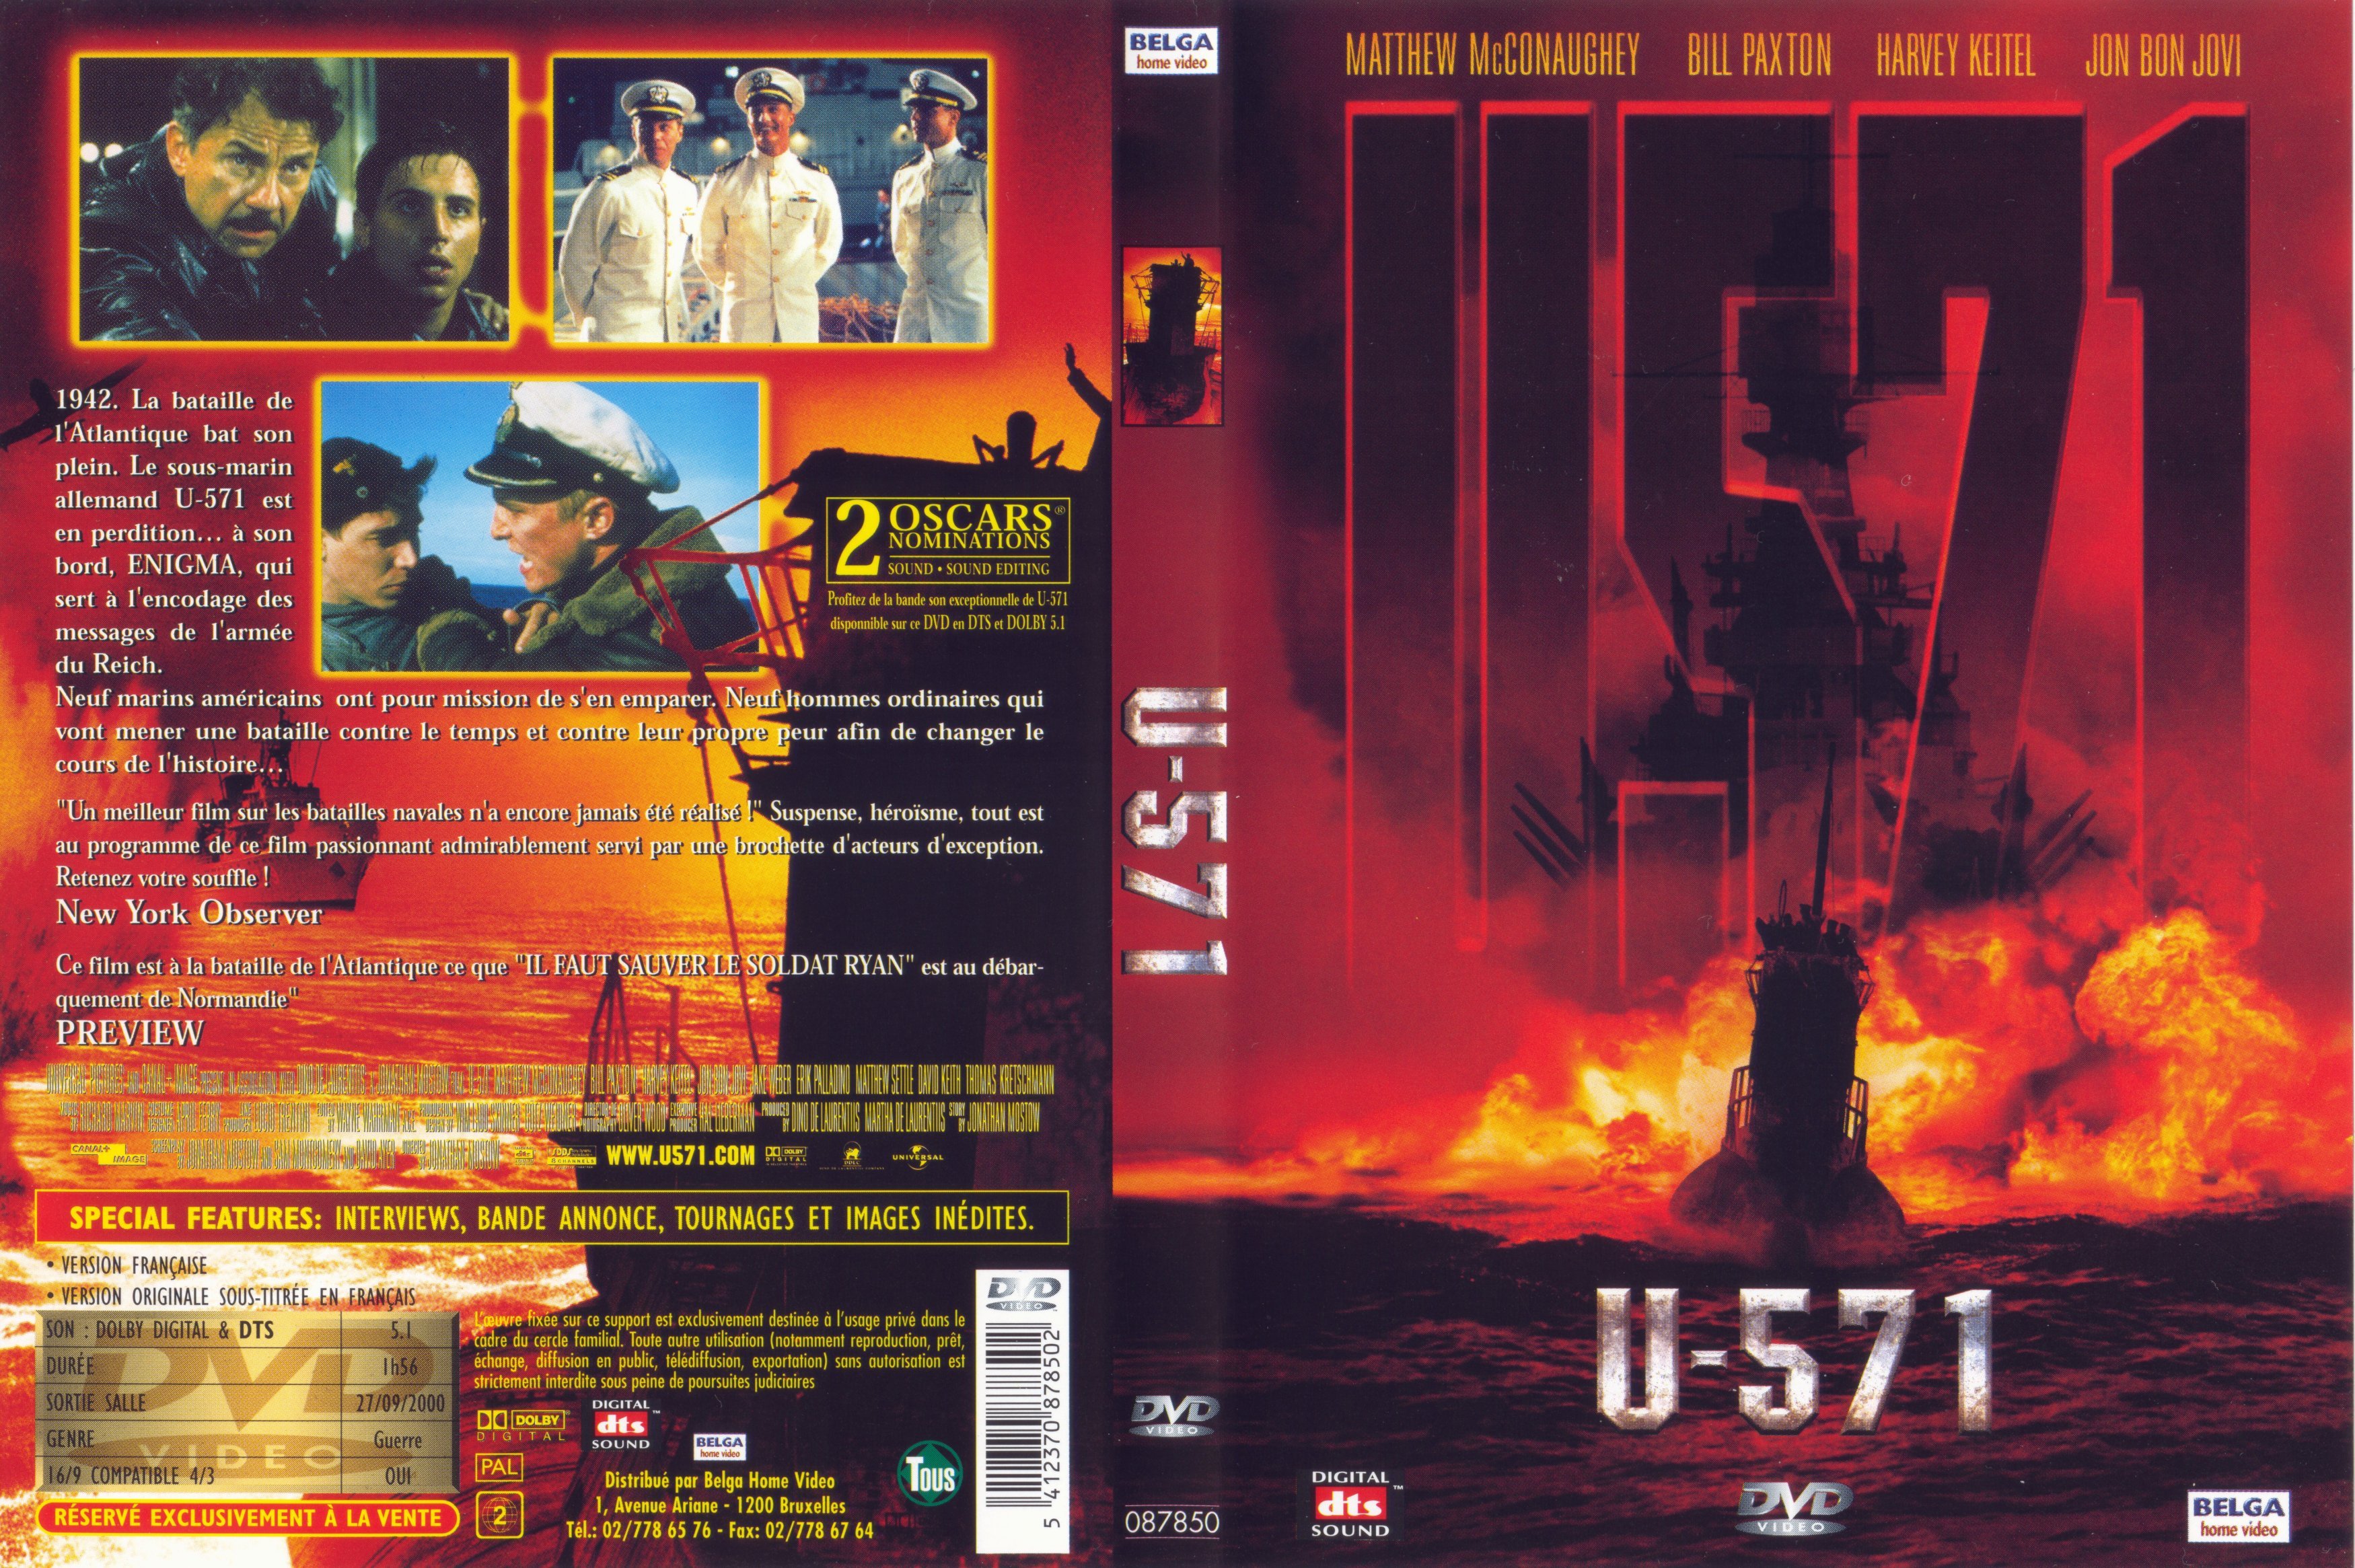 Jaquette DVD de U-571 v2 - Cinéma Passion3500 x 2331